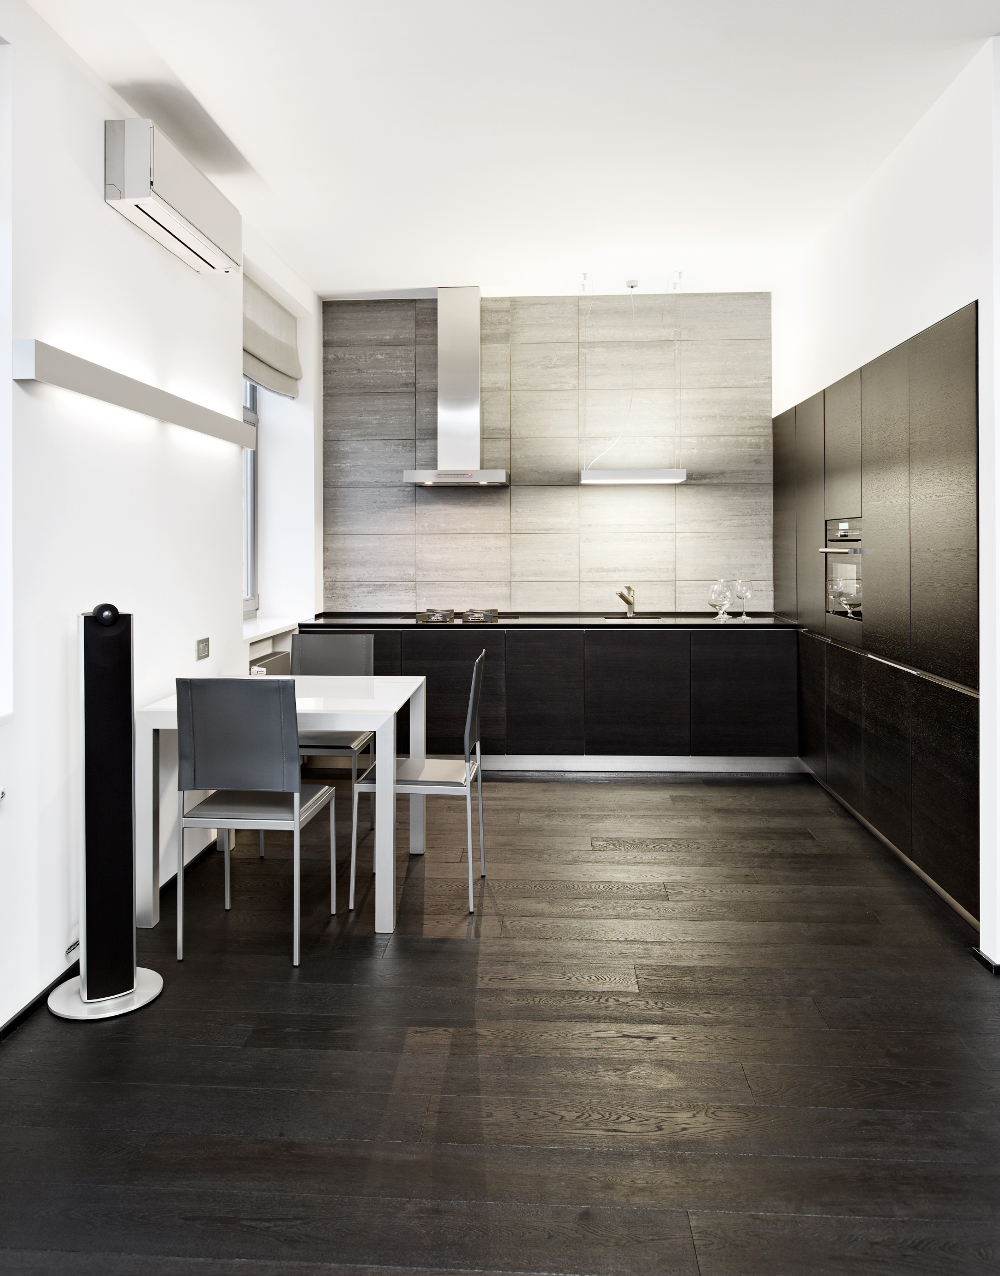 Modern minimalism style kitchen interior in monochrome tones